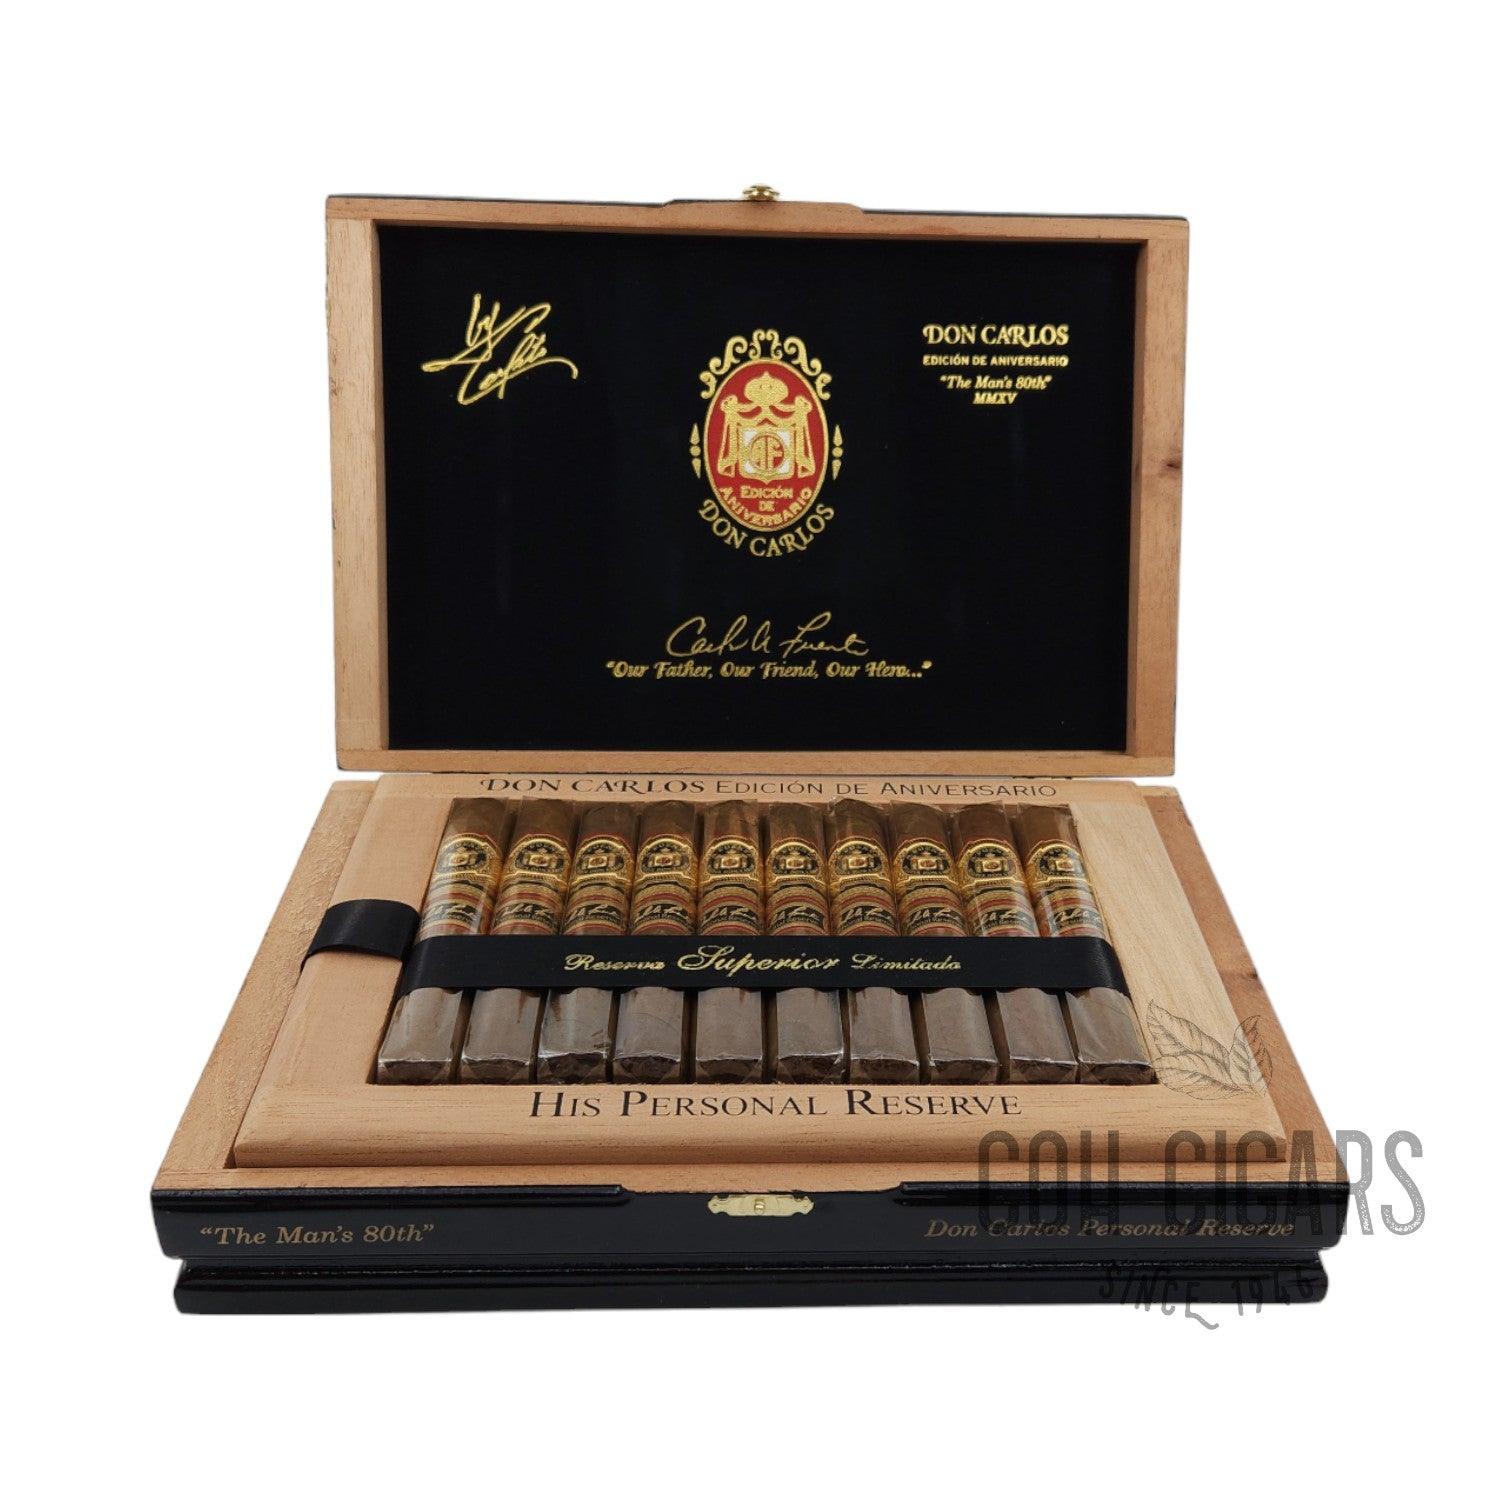 Arturo Fuente Cigar | Don Carlos Edicion De Aniversario The Man's 80th MMXV | Box 20 - HK CohCigars